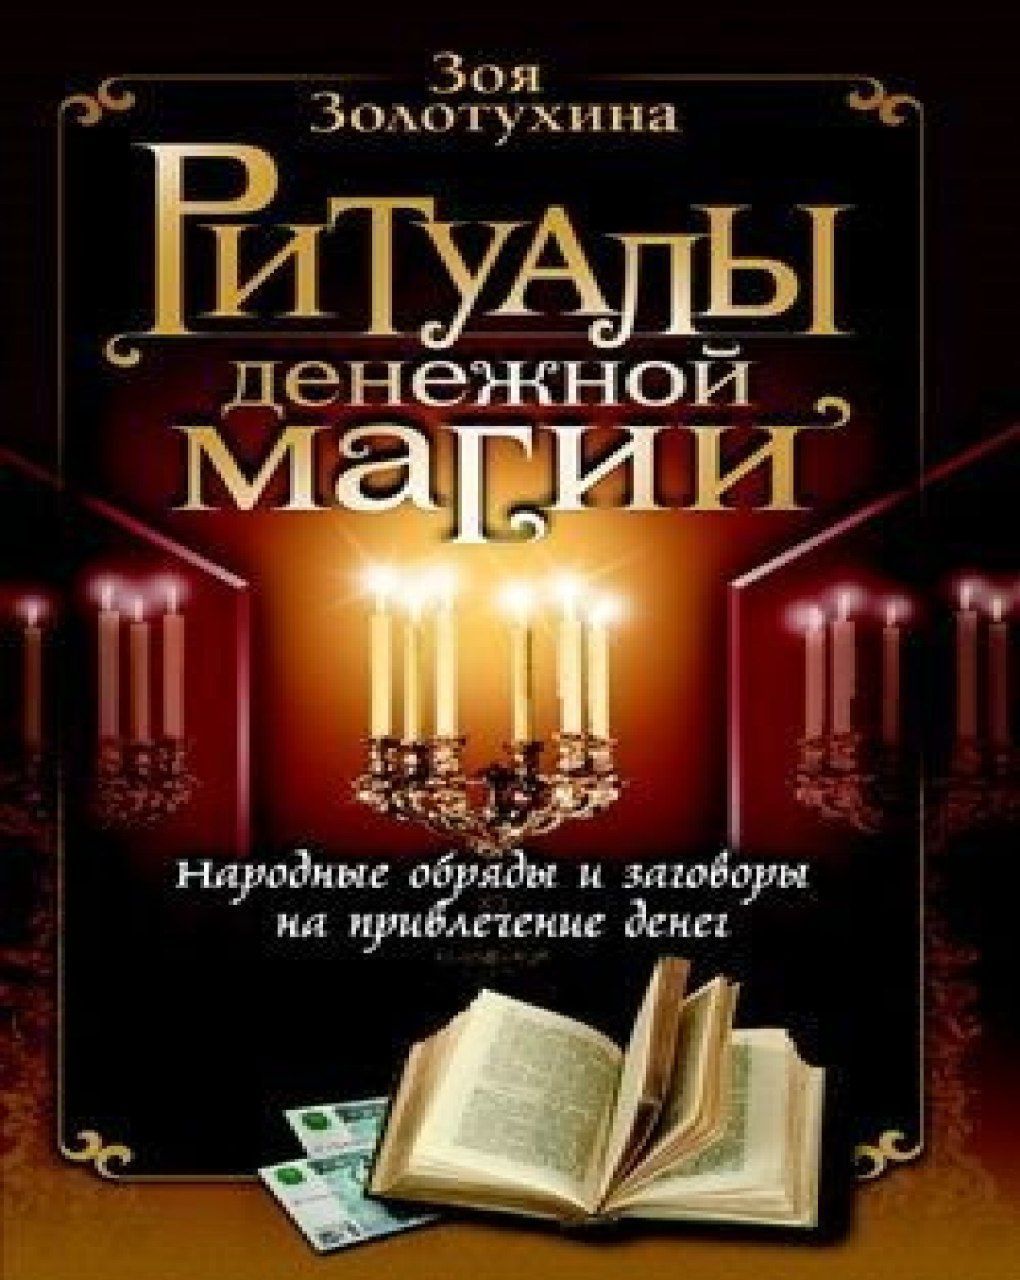 Книги для изучения магии, ритуалов